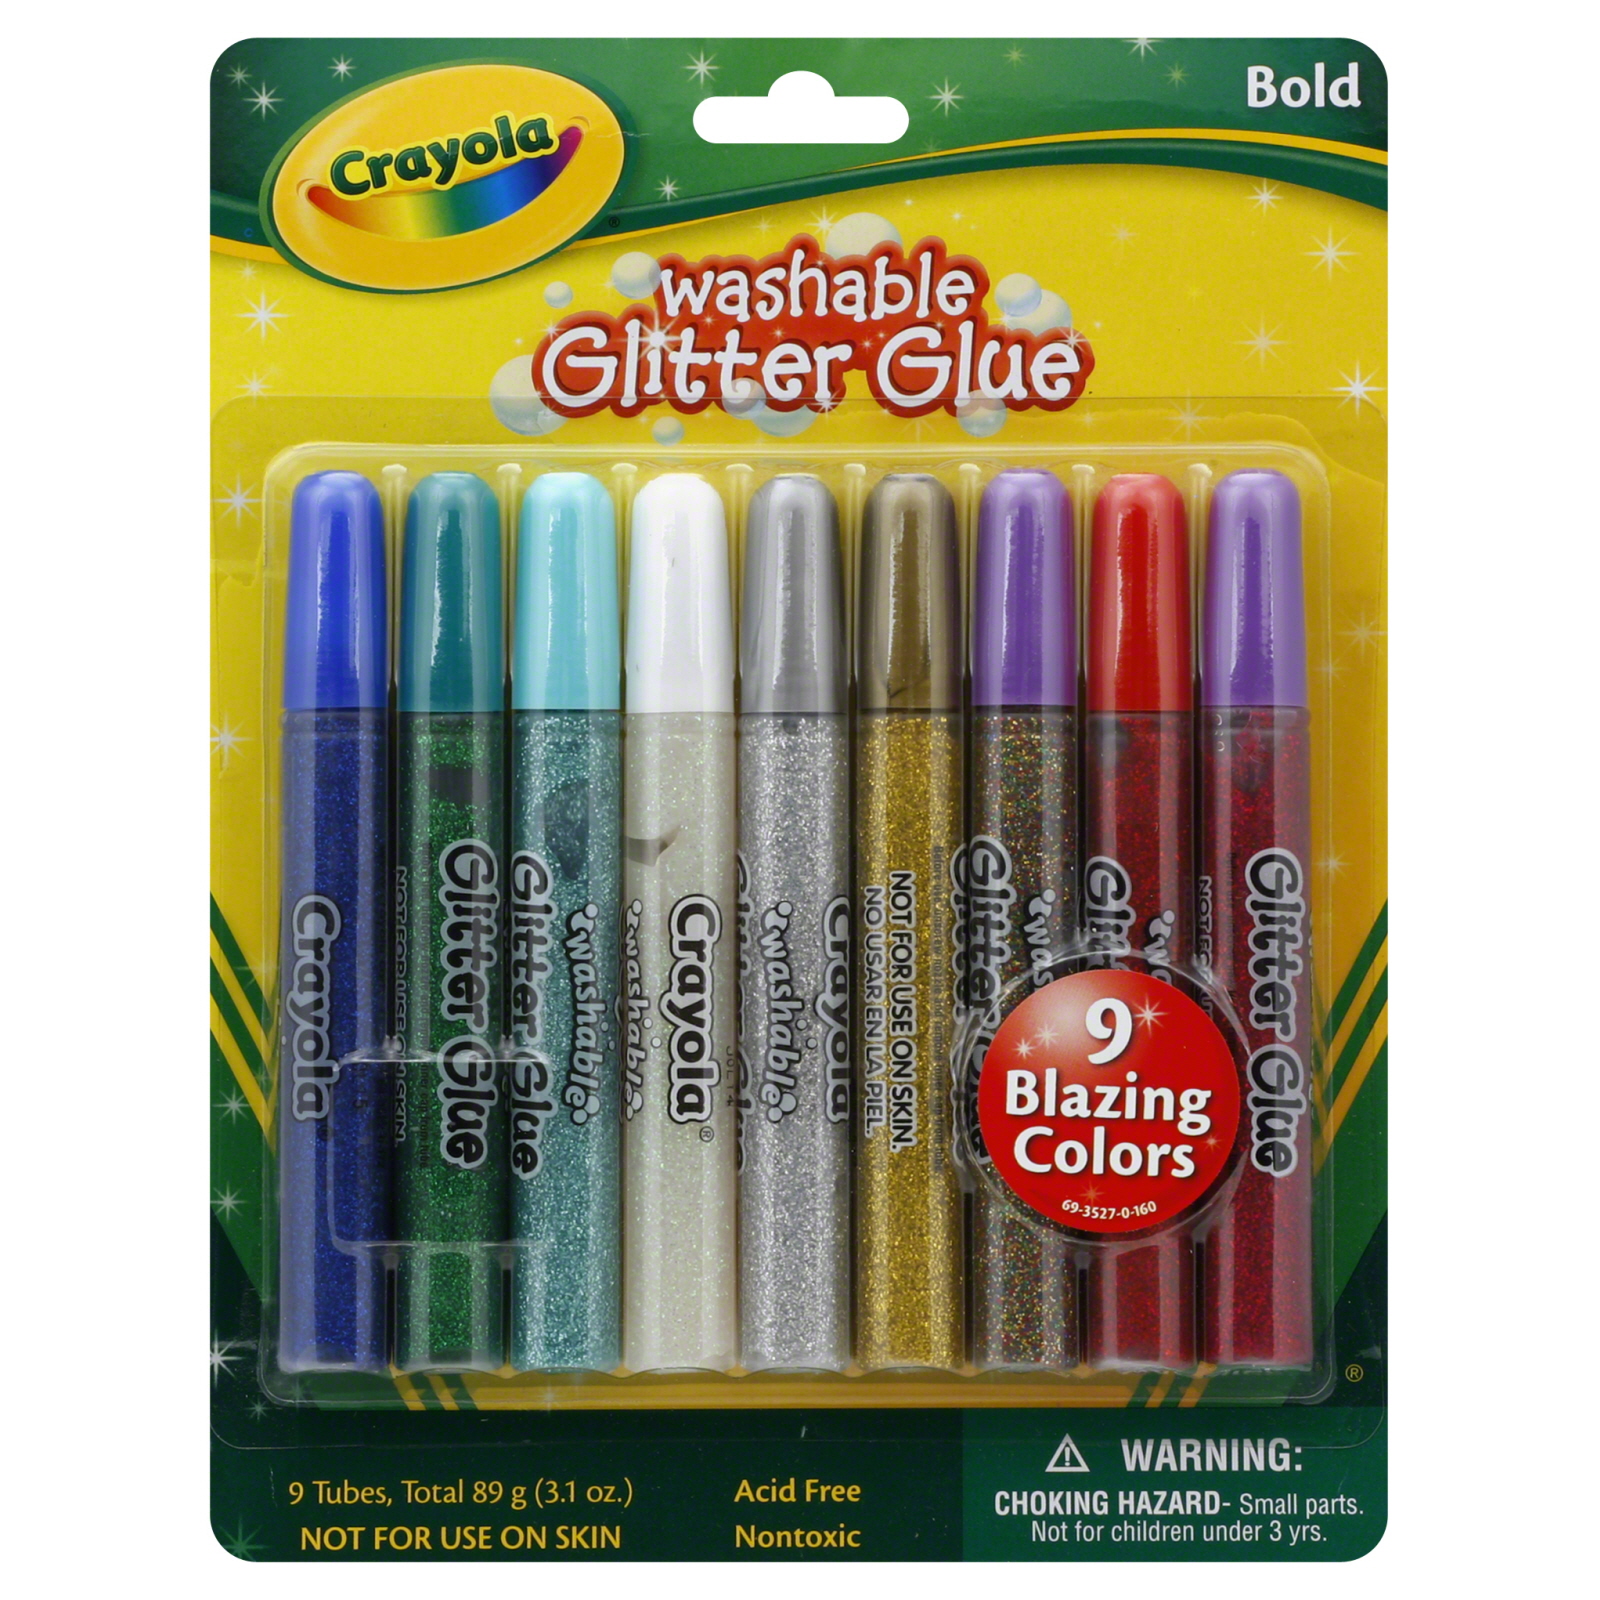 Crayola 25705716 Glitter Glue, Washable, Bold, 9 - 0.35 fl oz (10.3 ml) tubes [3.15 oz (93 ml)]